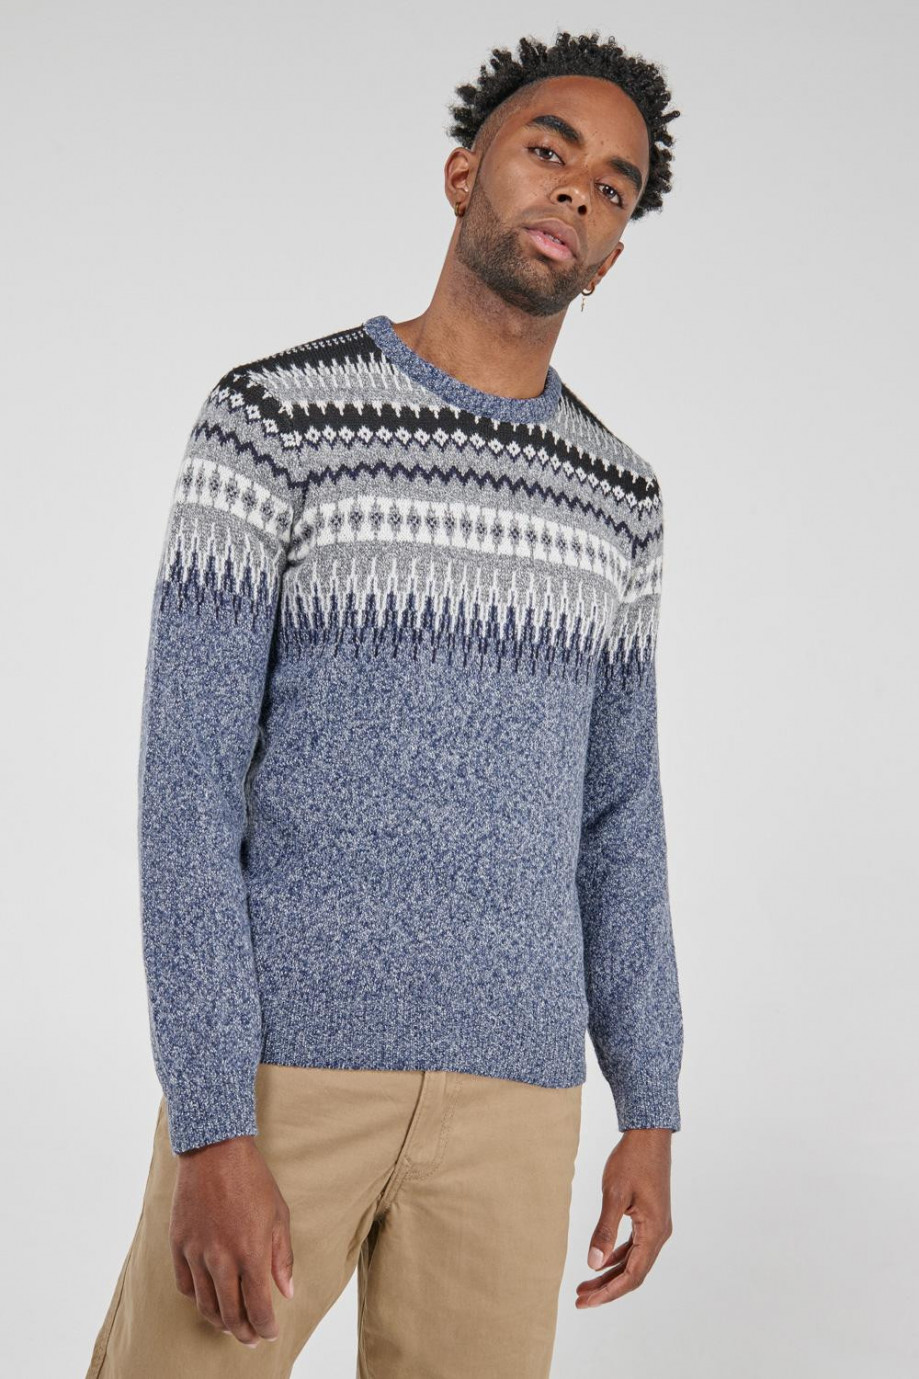 Suéter tejido unicolor con motivos de figuras y cuello redondo